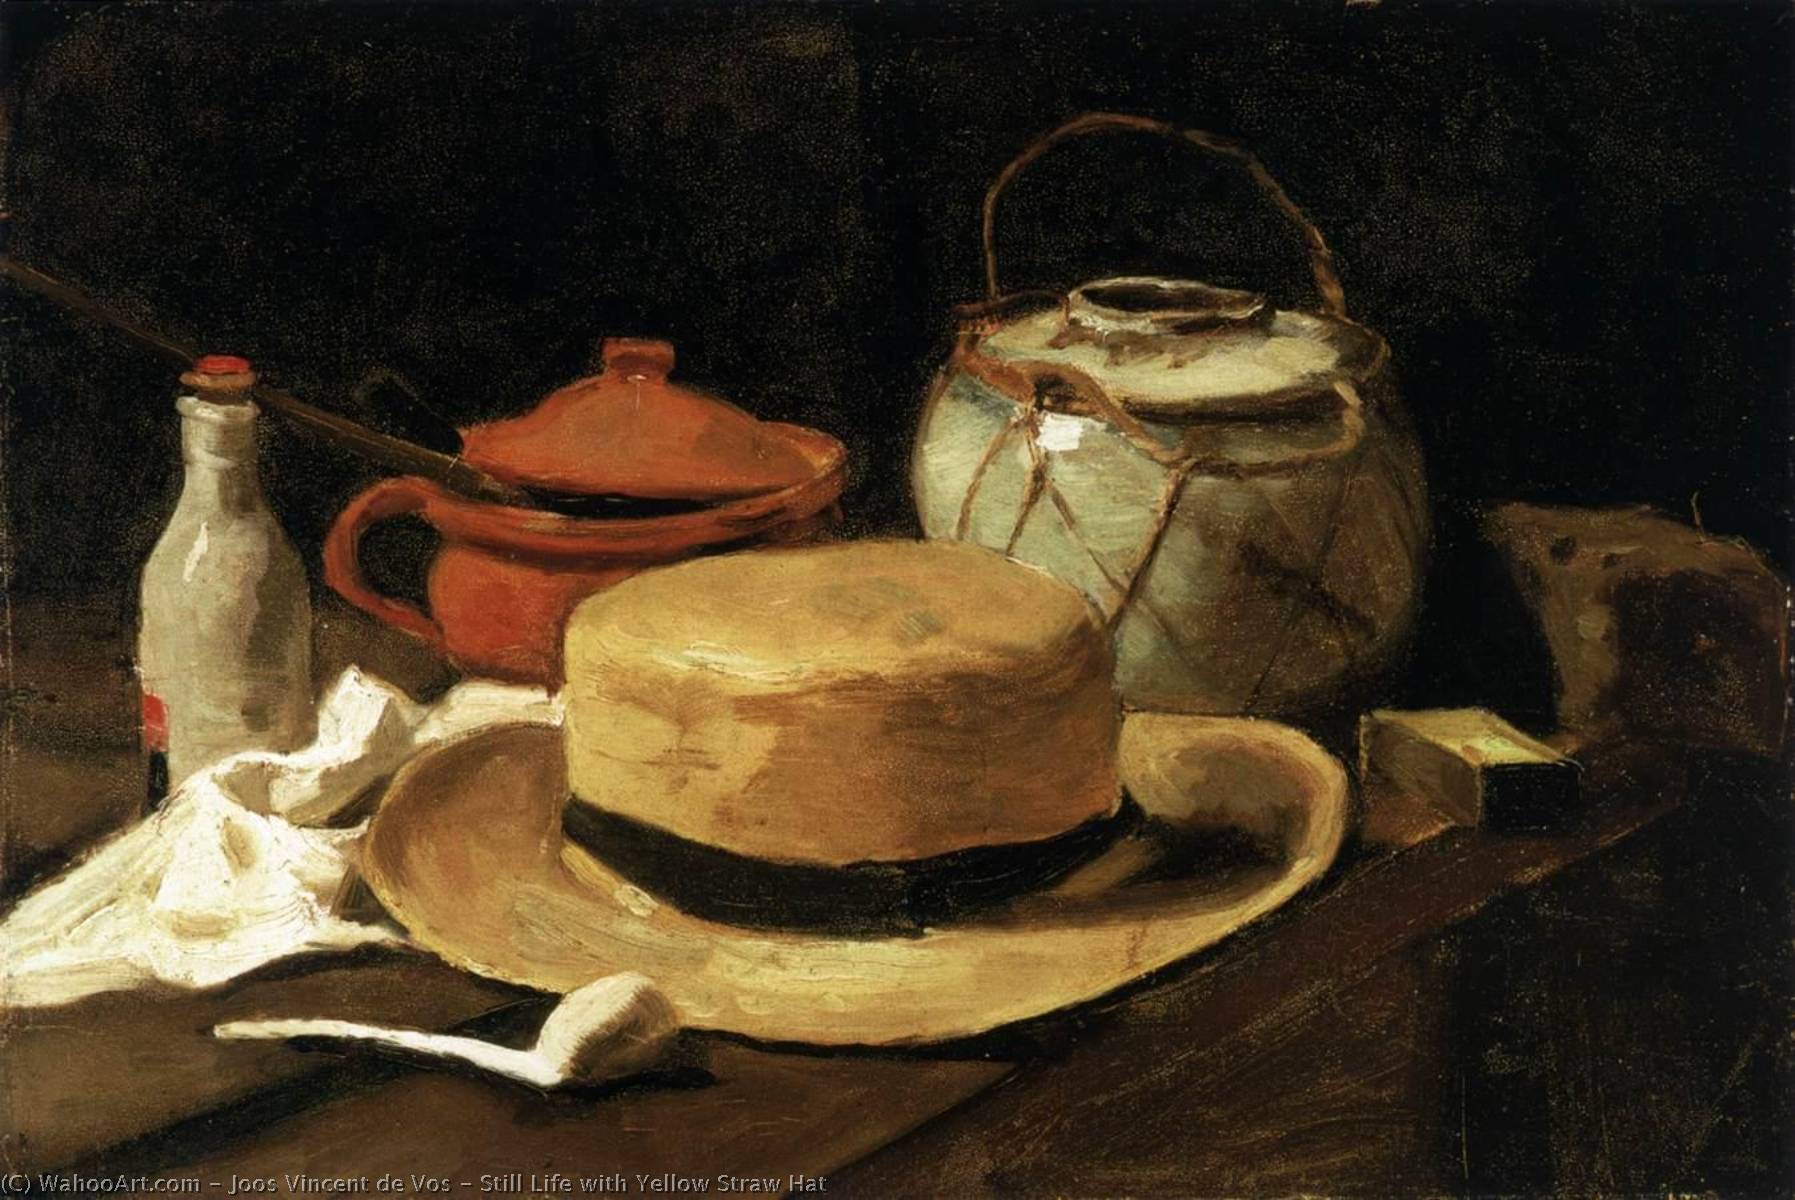 WikiOO.org - Enciclopédia das Belas Artes - Pintura, Arte por Joos Vincent De Vos - Still Life with Yellow Straw Hat